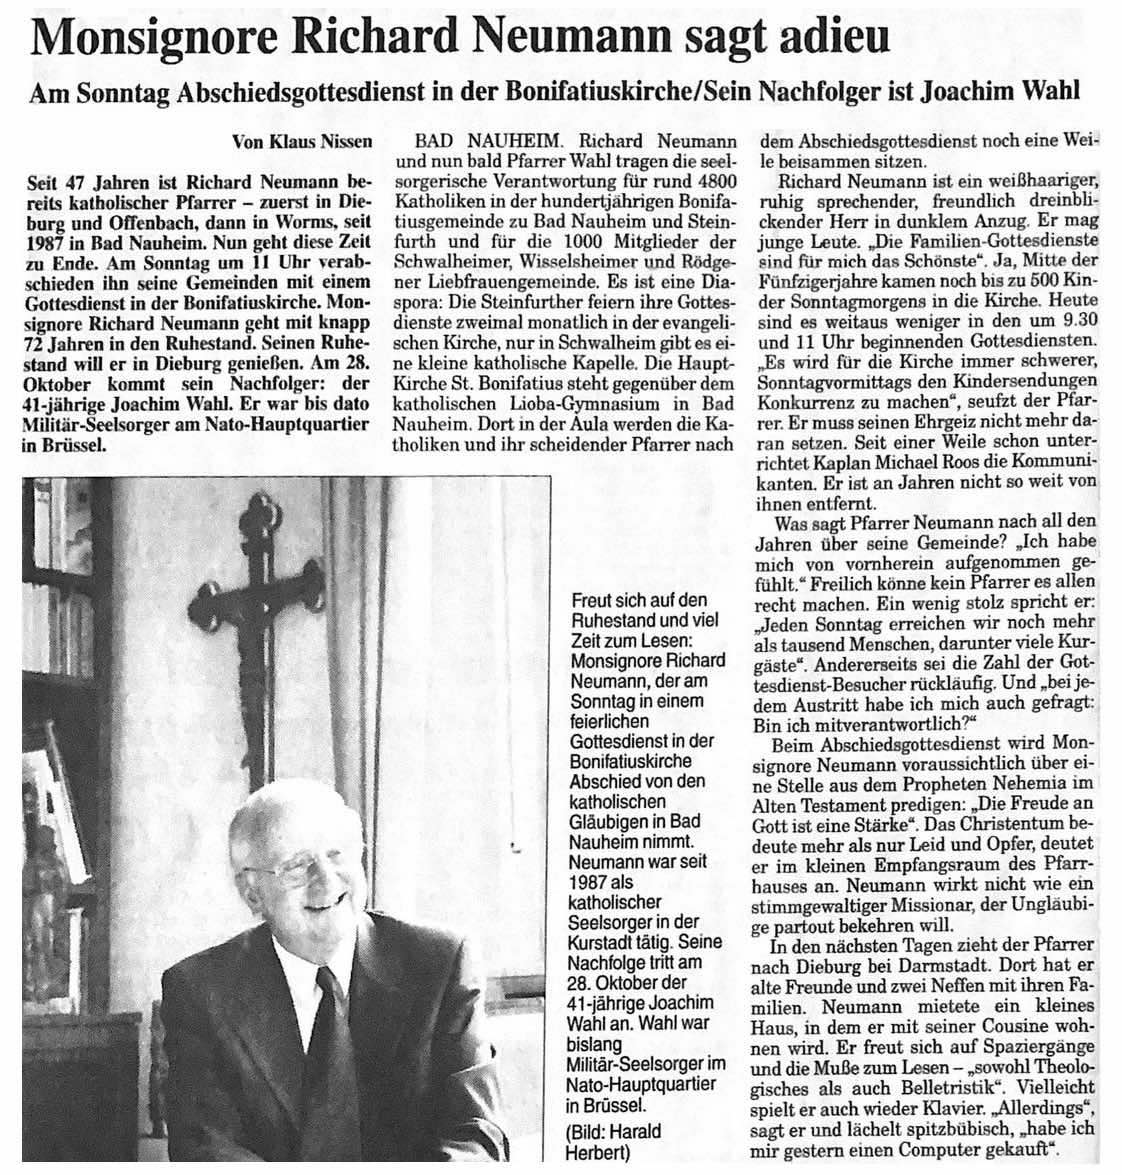 Frankfurter Rundschau von 28.09.2001 (c) Frankfurter Rundschau